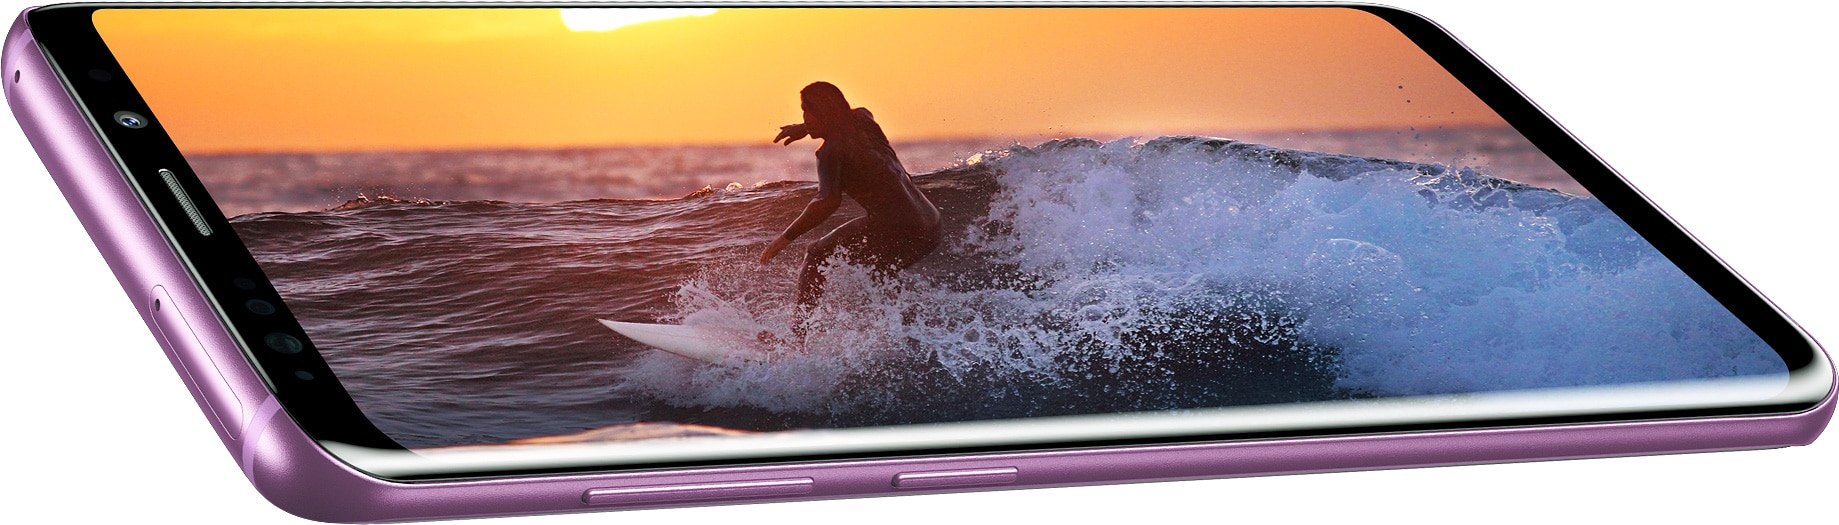 Gros plan du Galaxy S9+ vu incliné pour montrer l’écran Infinity immersif